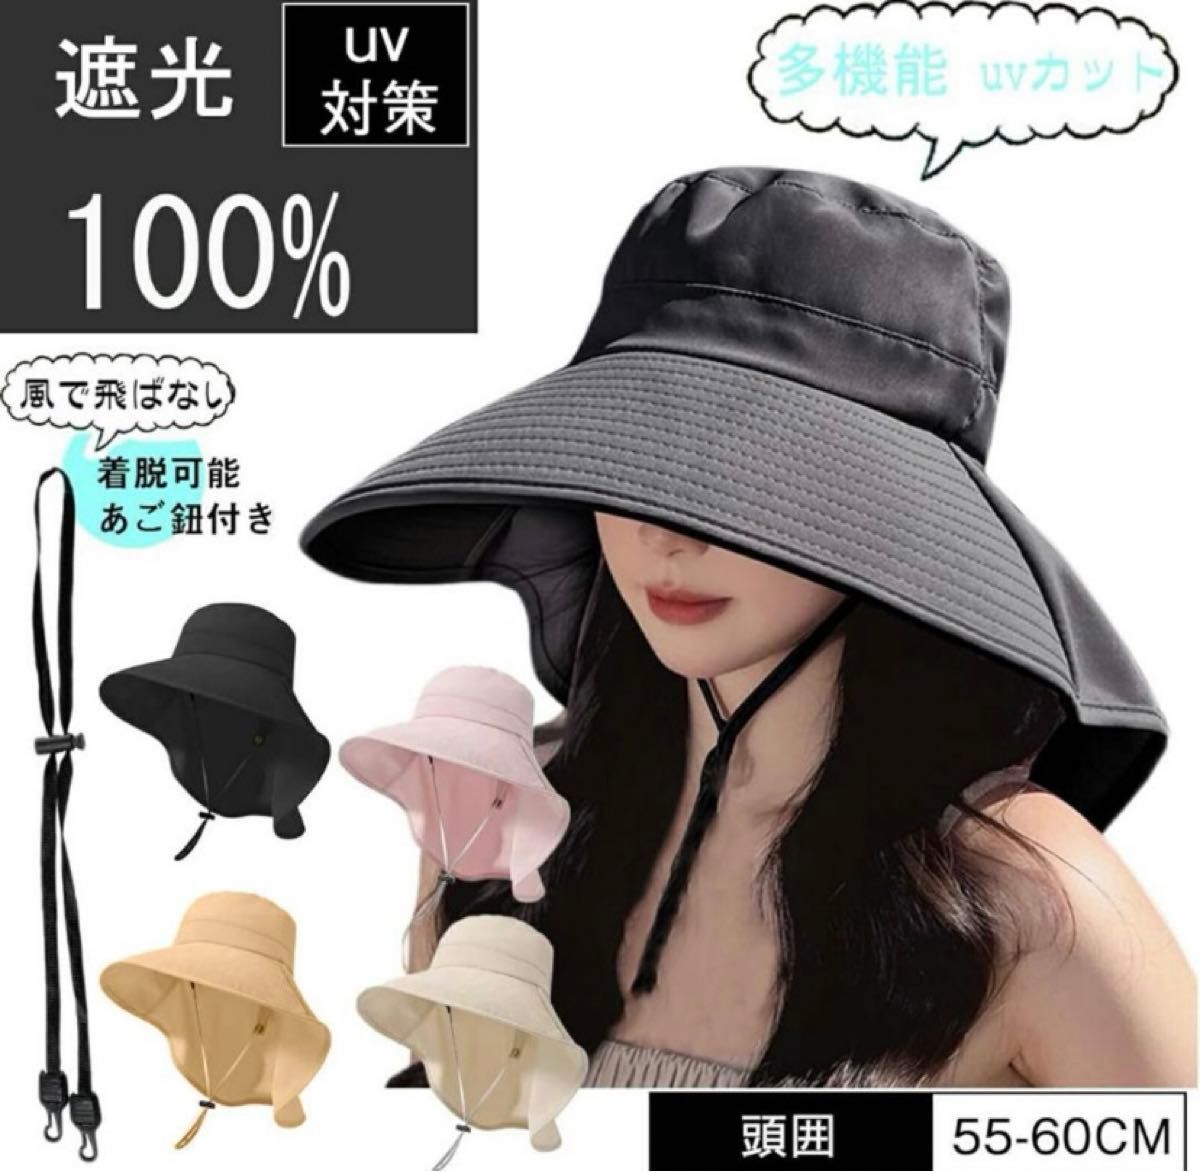 日除けに　UVカット 帽子 レディース つば広帽子 ブラック　紐付き つば広 帽子 日焼け防止 小顔効果 おしゃれ バケットハット